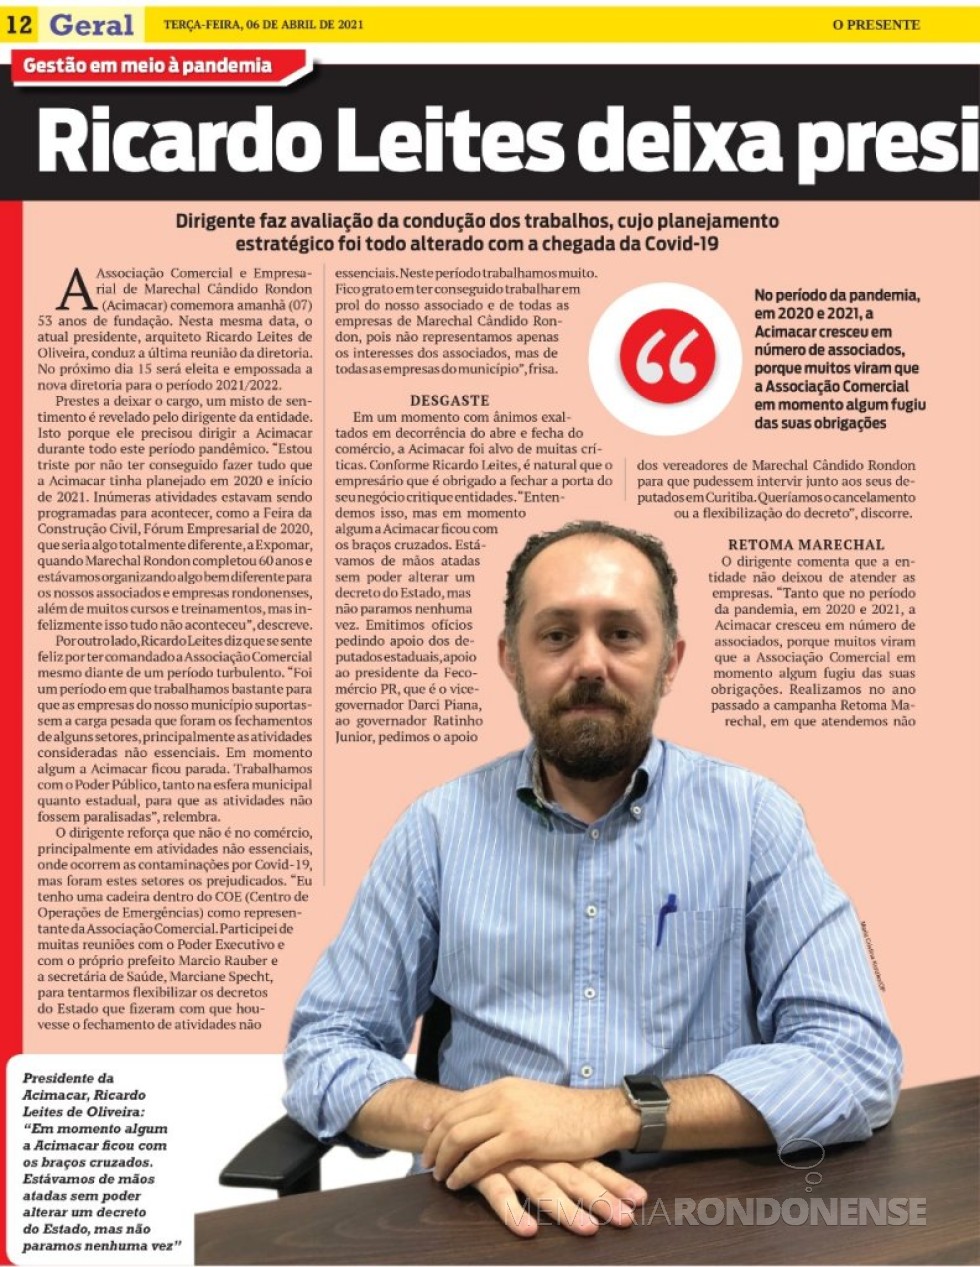 || 1ª parte da entrevista de Ricardo Leites de Oliveira ao jornal O Presente, em abril de 2021.
Imagem: Acervo do periódico - FOTO 19 - 